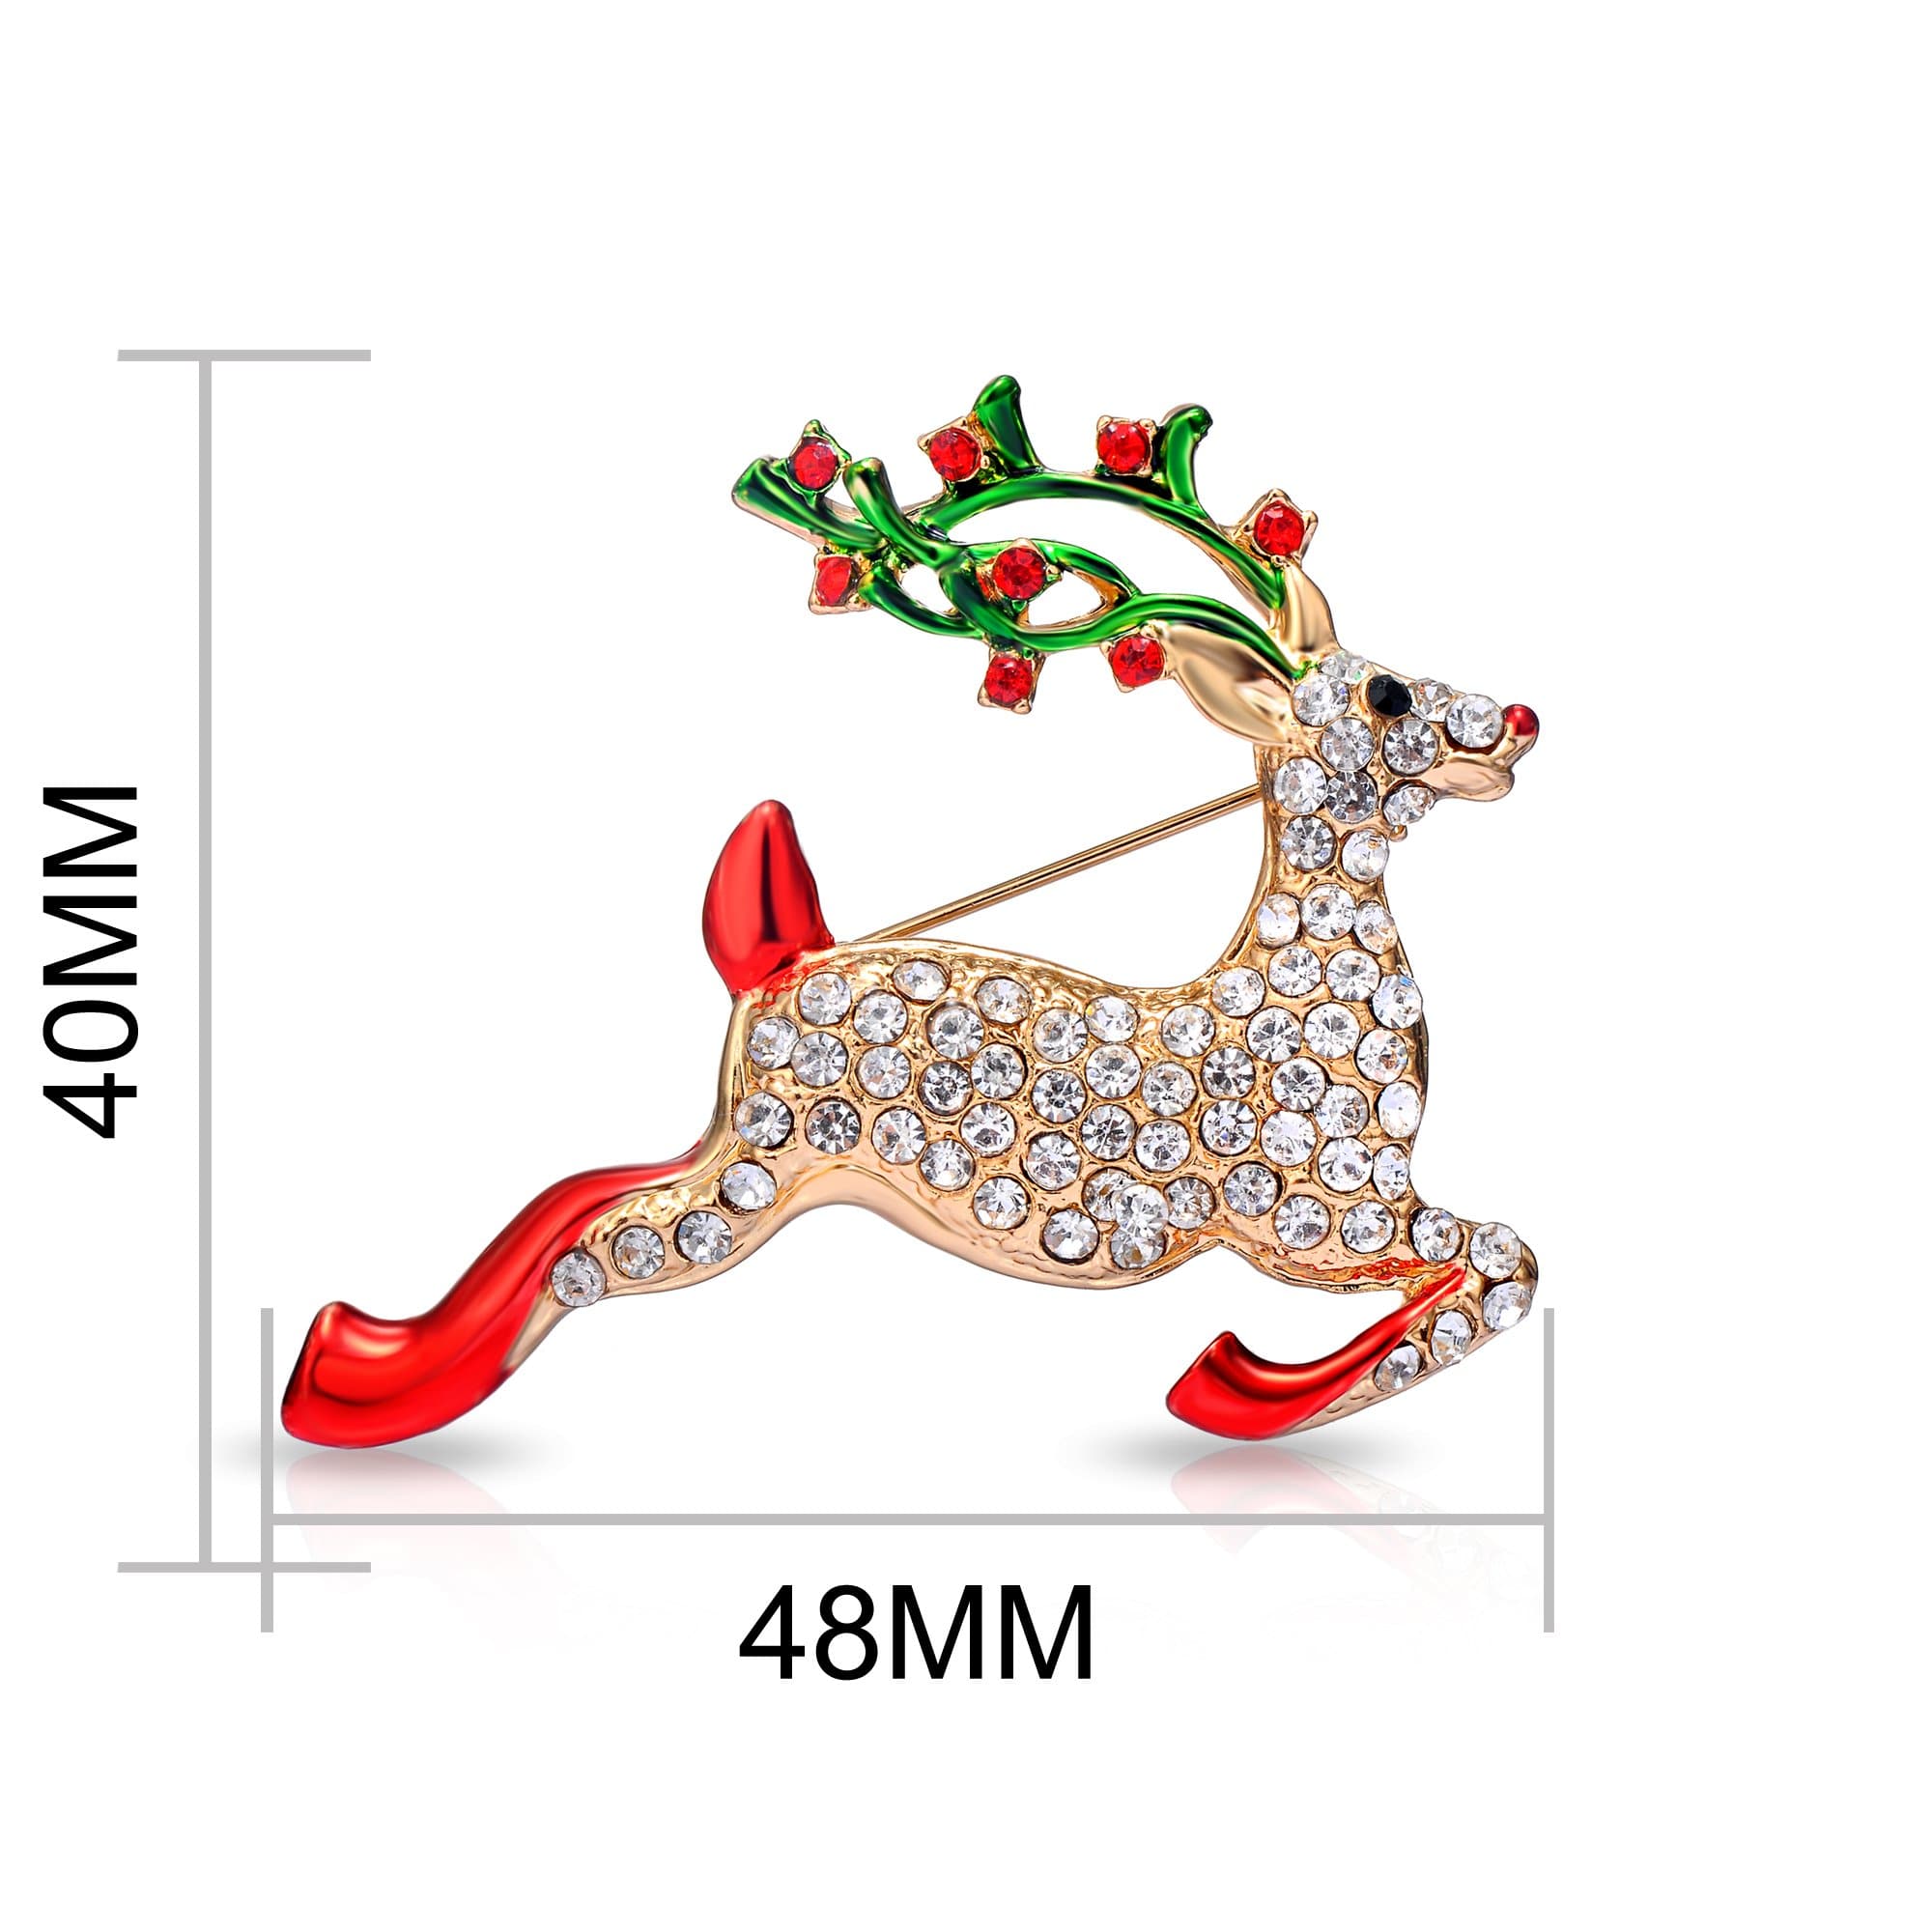 Reindeer Christmas Brooch